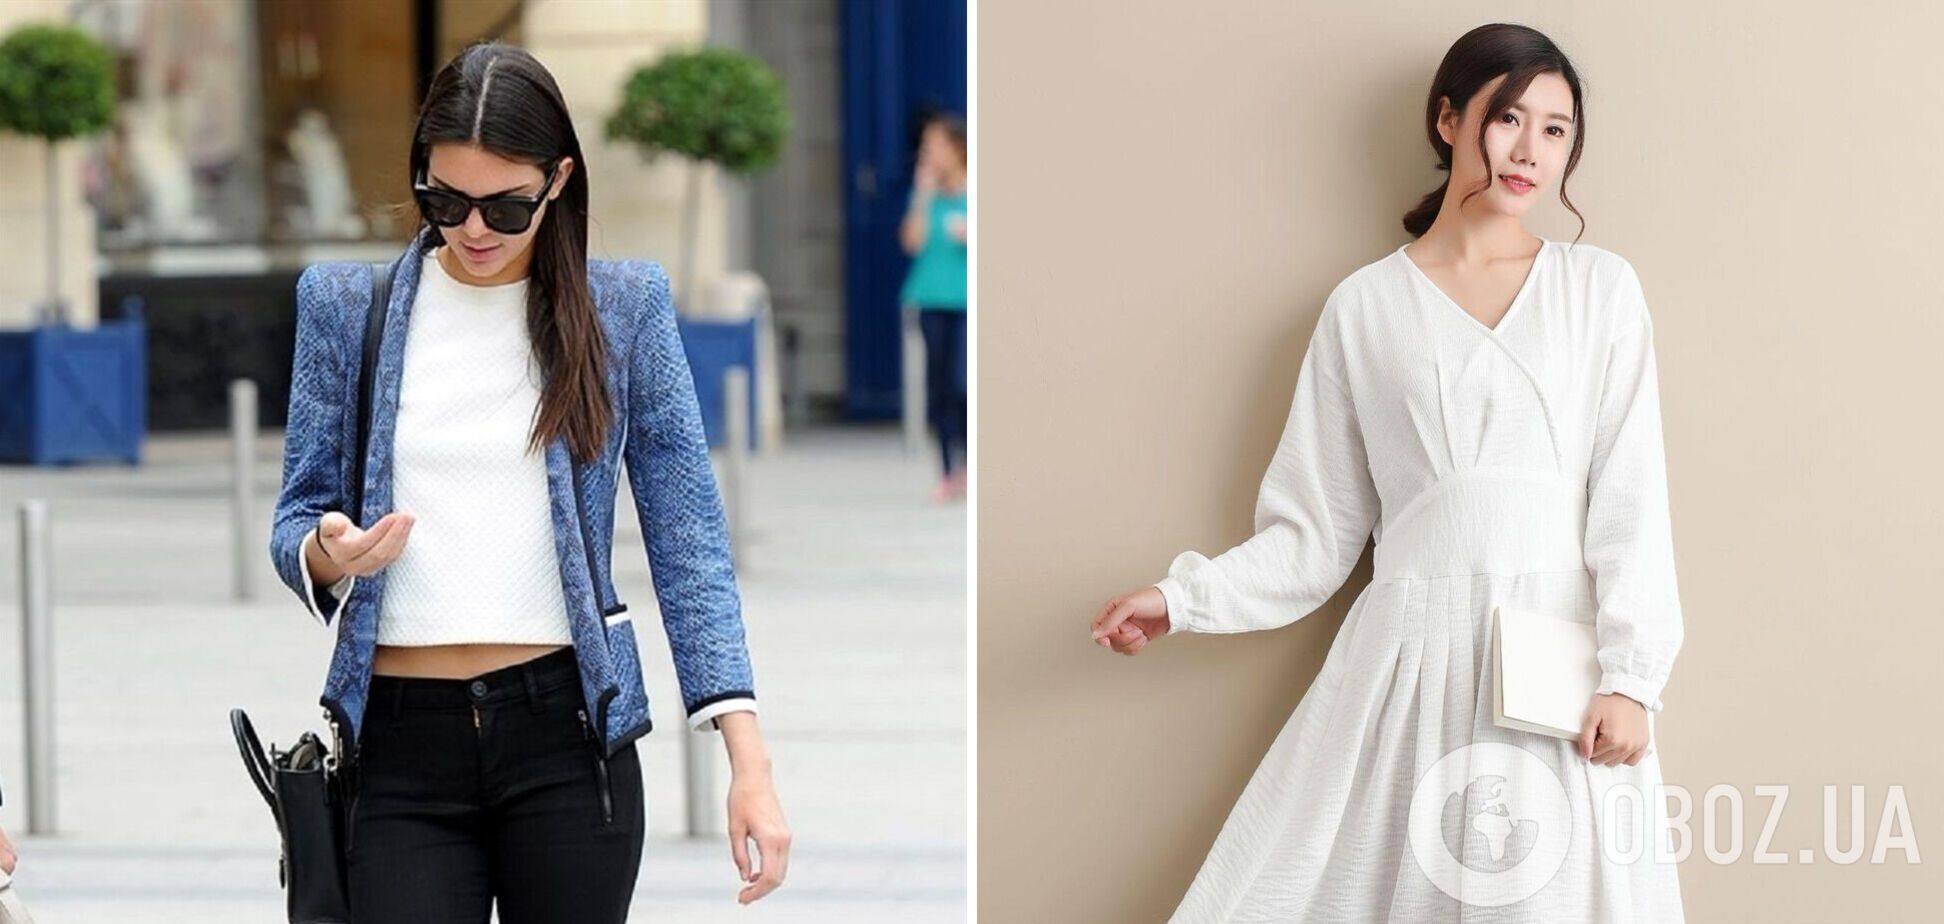 Базовый гардероб в школу и университет: стилист назвала топ-12 модных вещей